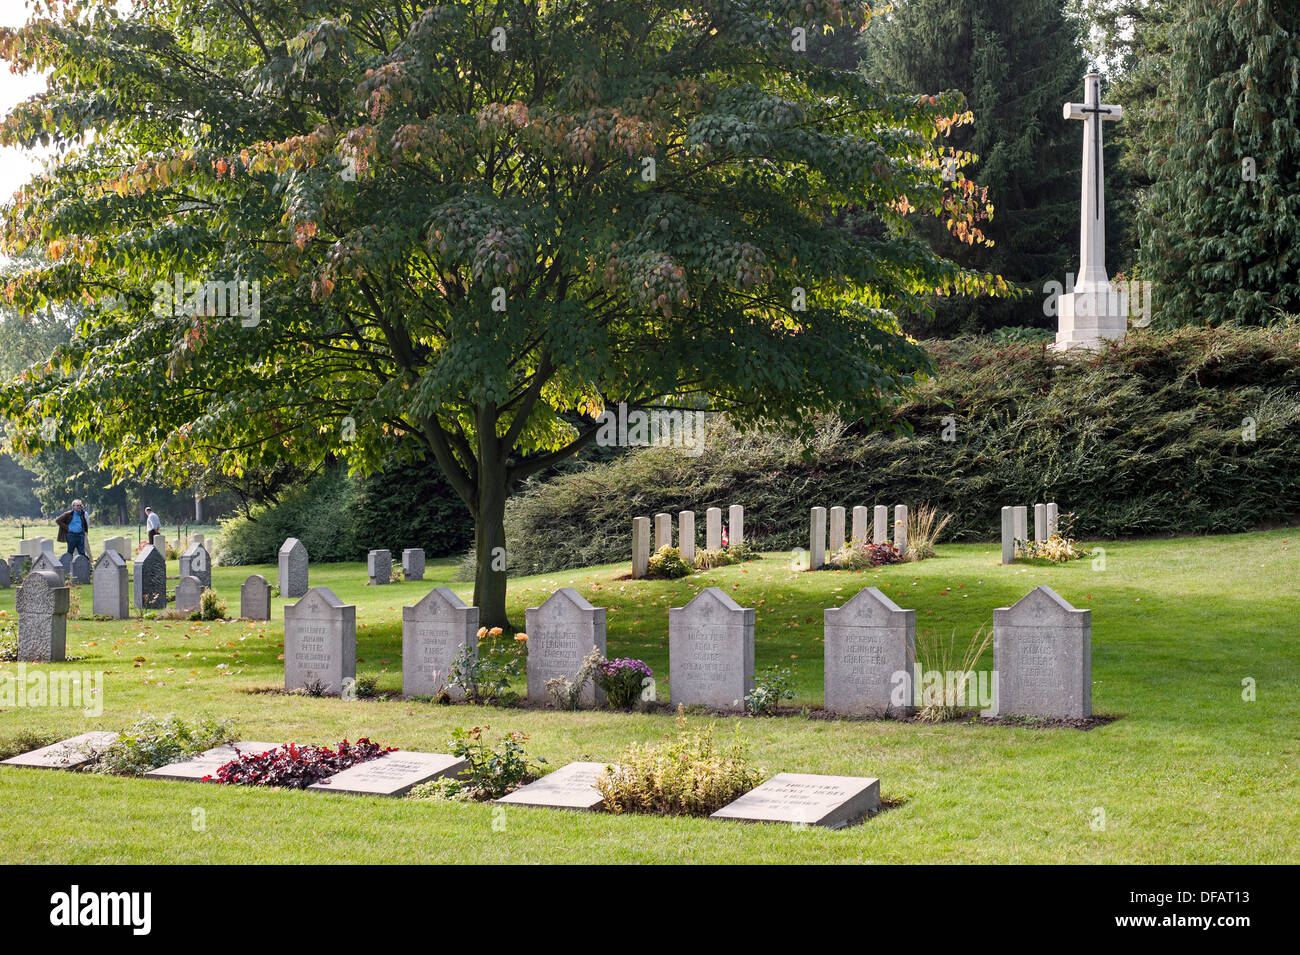 Tombes britanniques et allemandes à la St Symphorien Commonwealth War Graves Commission cemetery, Saint-Symphorien près de Mons, Belgique Banque D'Images